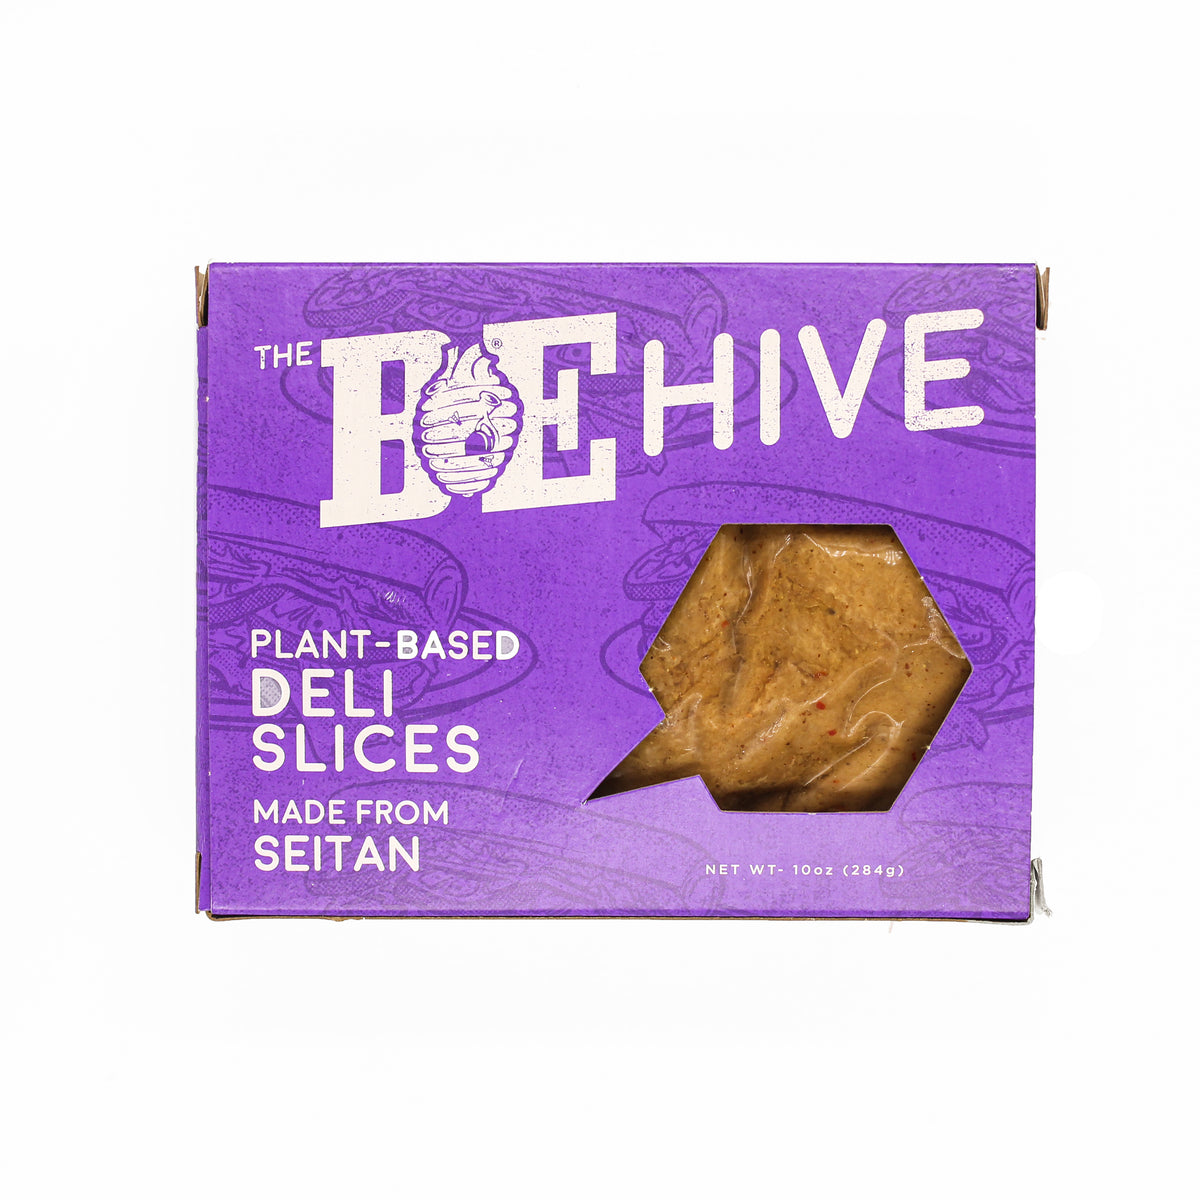 The BE-Hive Deli Slices